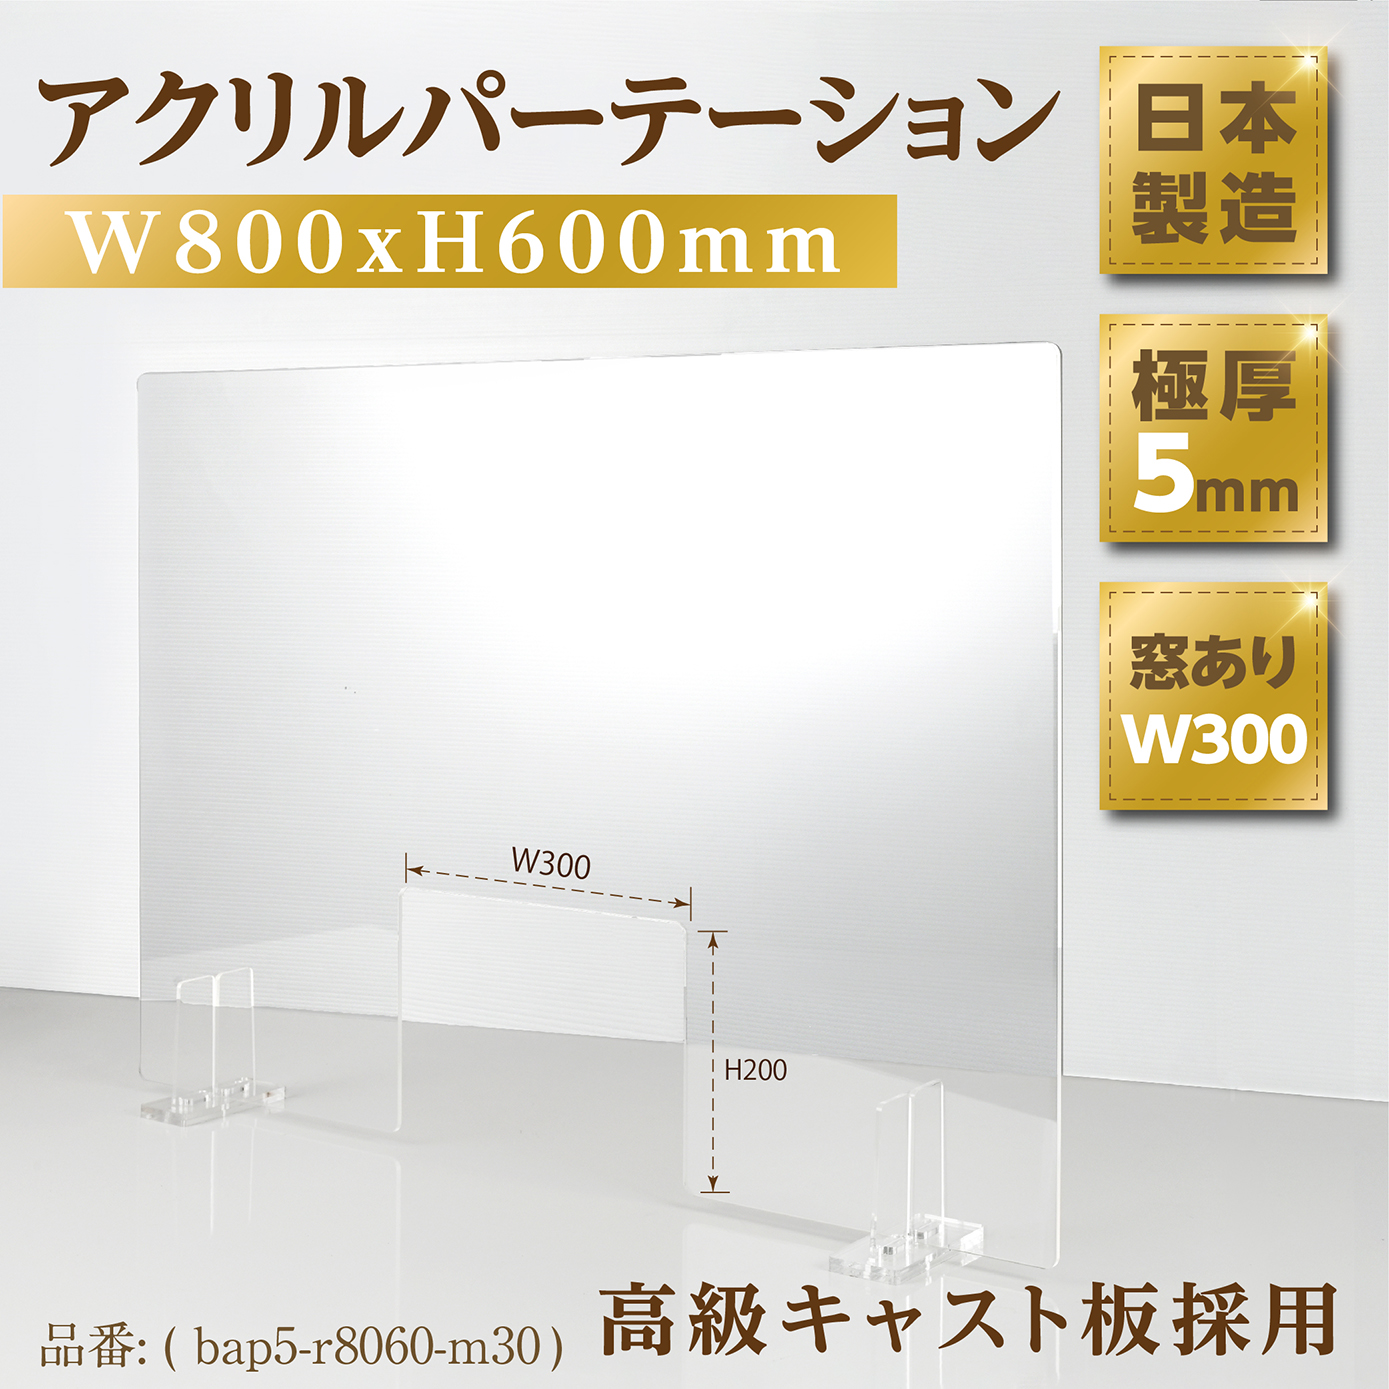 日本製] 透明アクリルパーテーション W800mm×H600mm 商品受け渡し窓